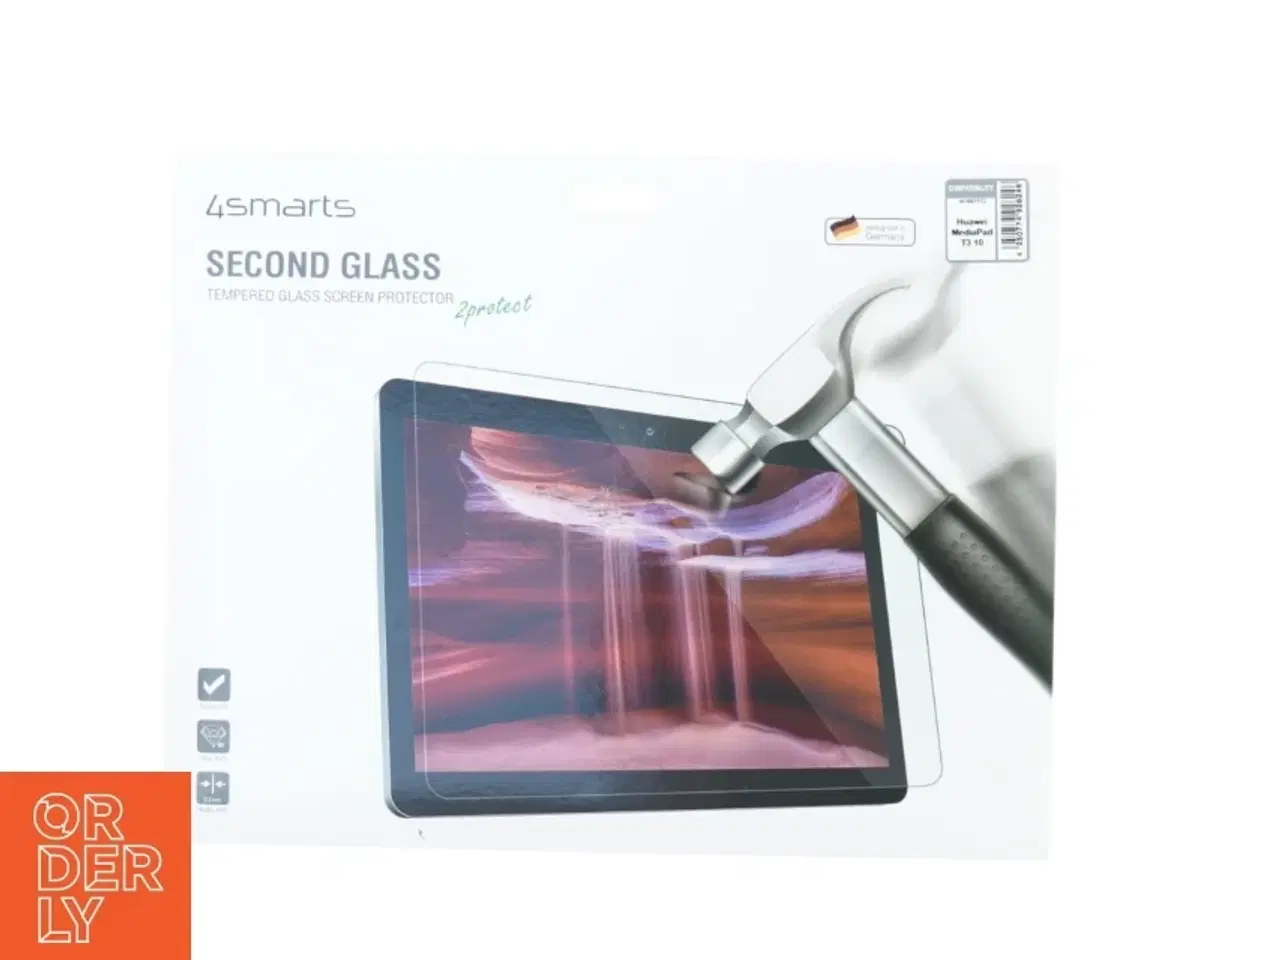 Billede 1 - Beskyttelsesglas til ipad fra 4 Smarts (str. 32 x 25 cm)